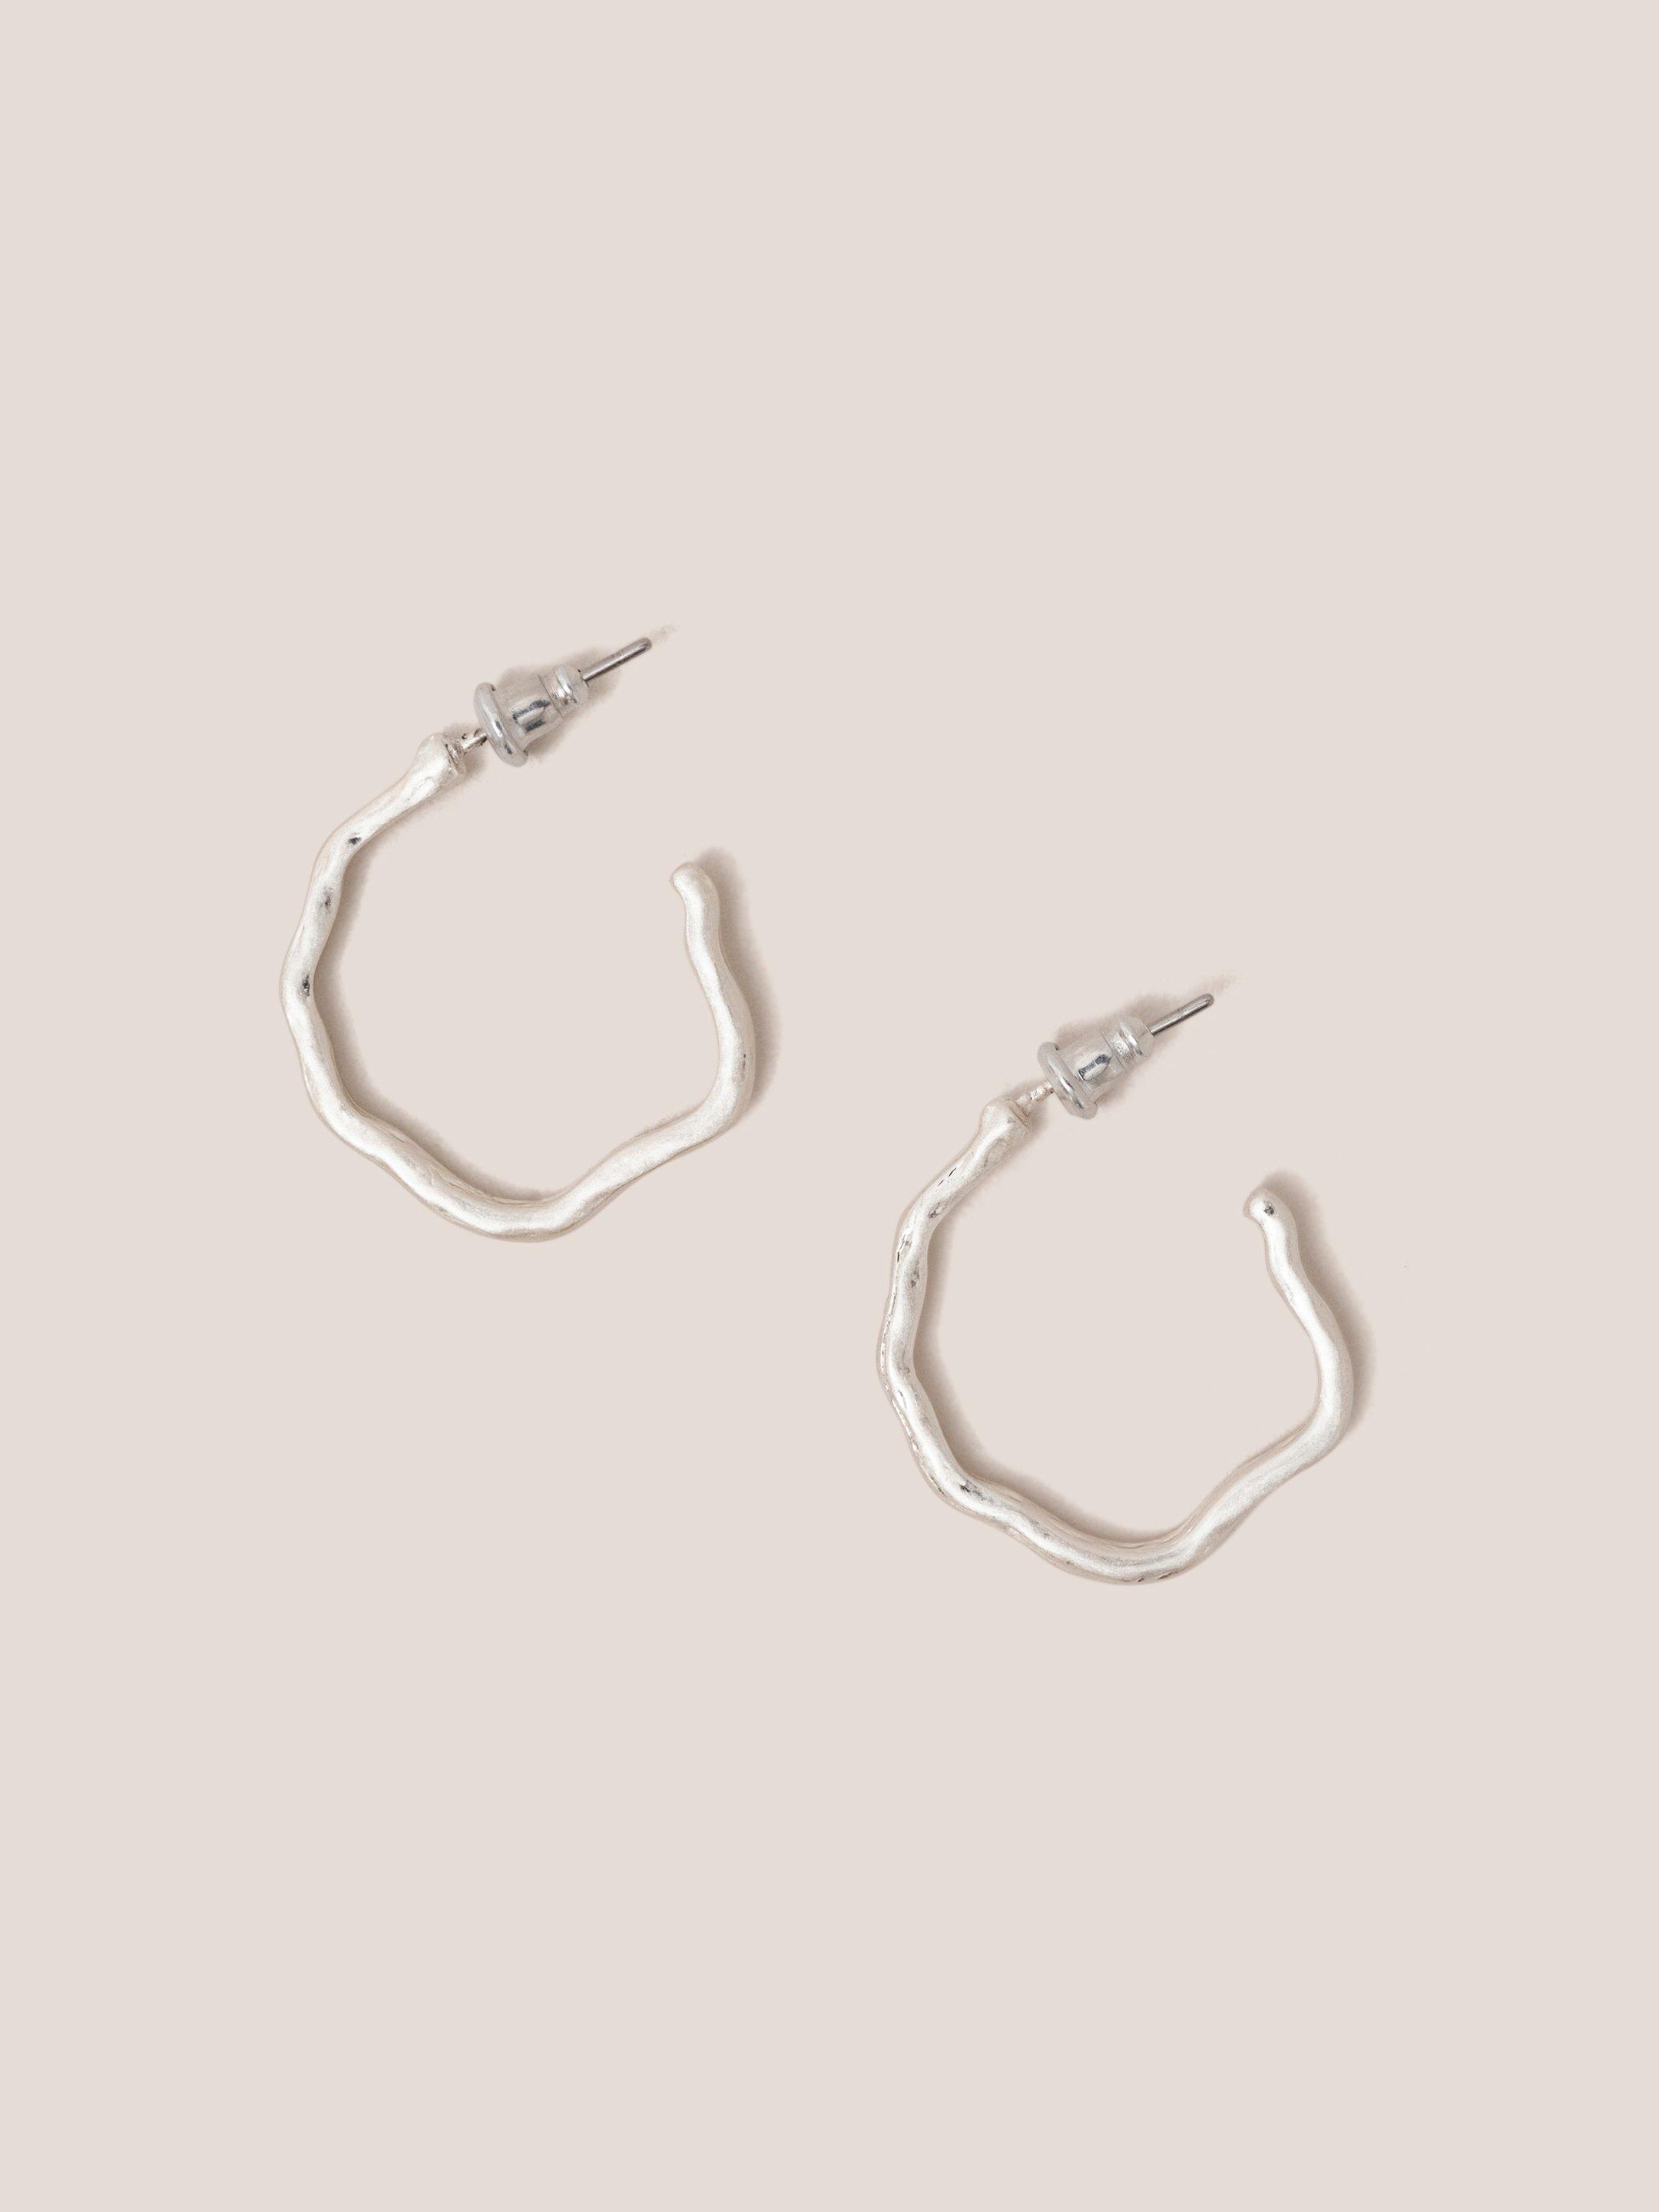 Abstract Hoop Earrings in SLV TN MET - FLAT FRONT